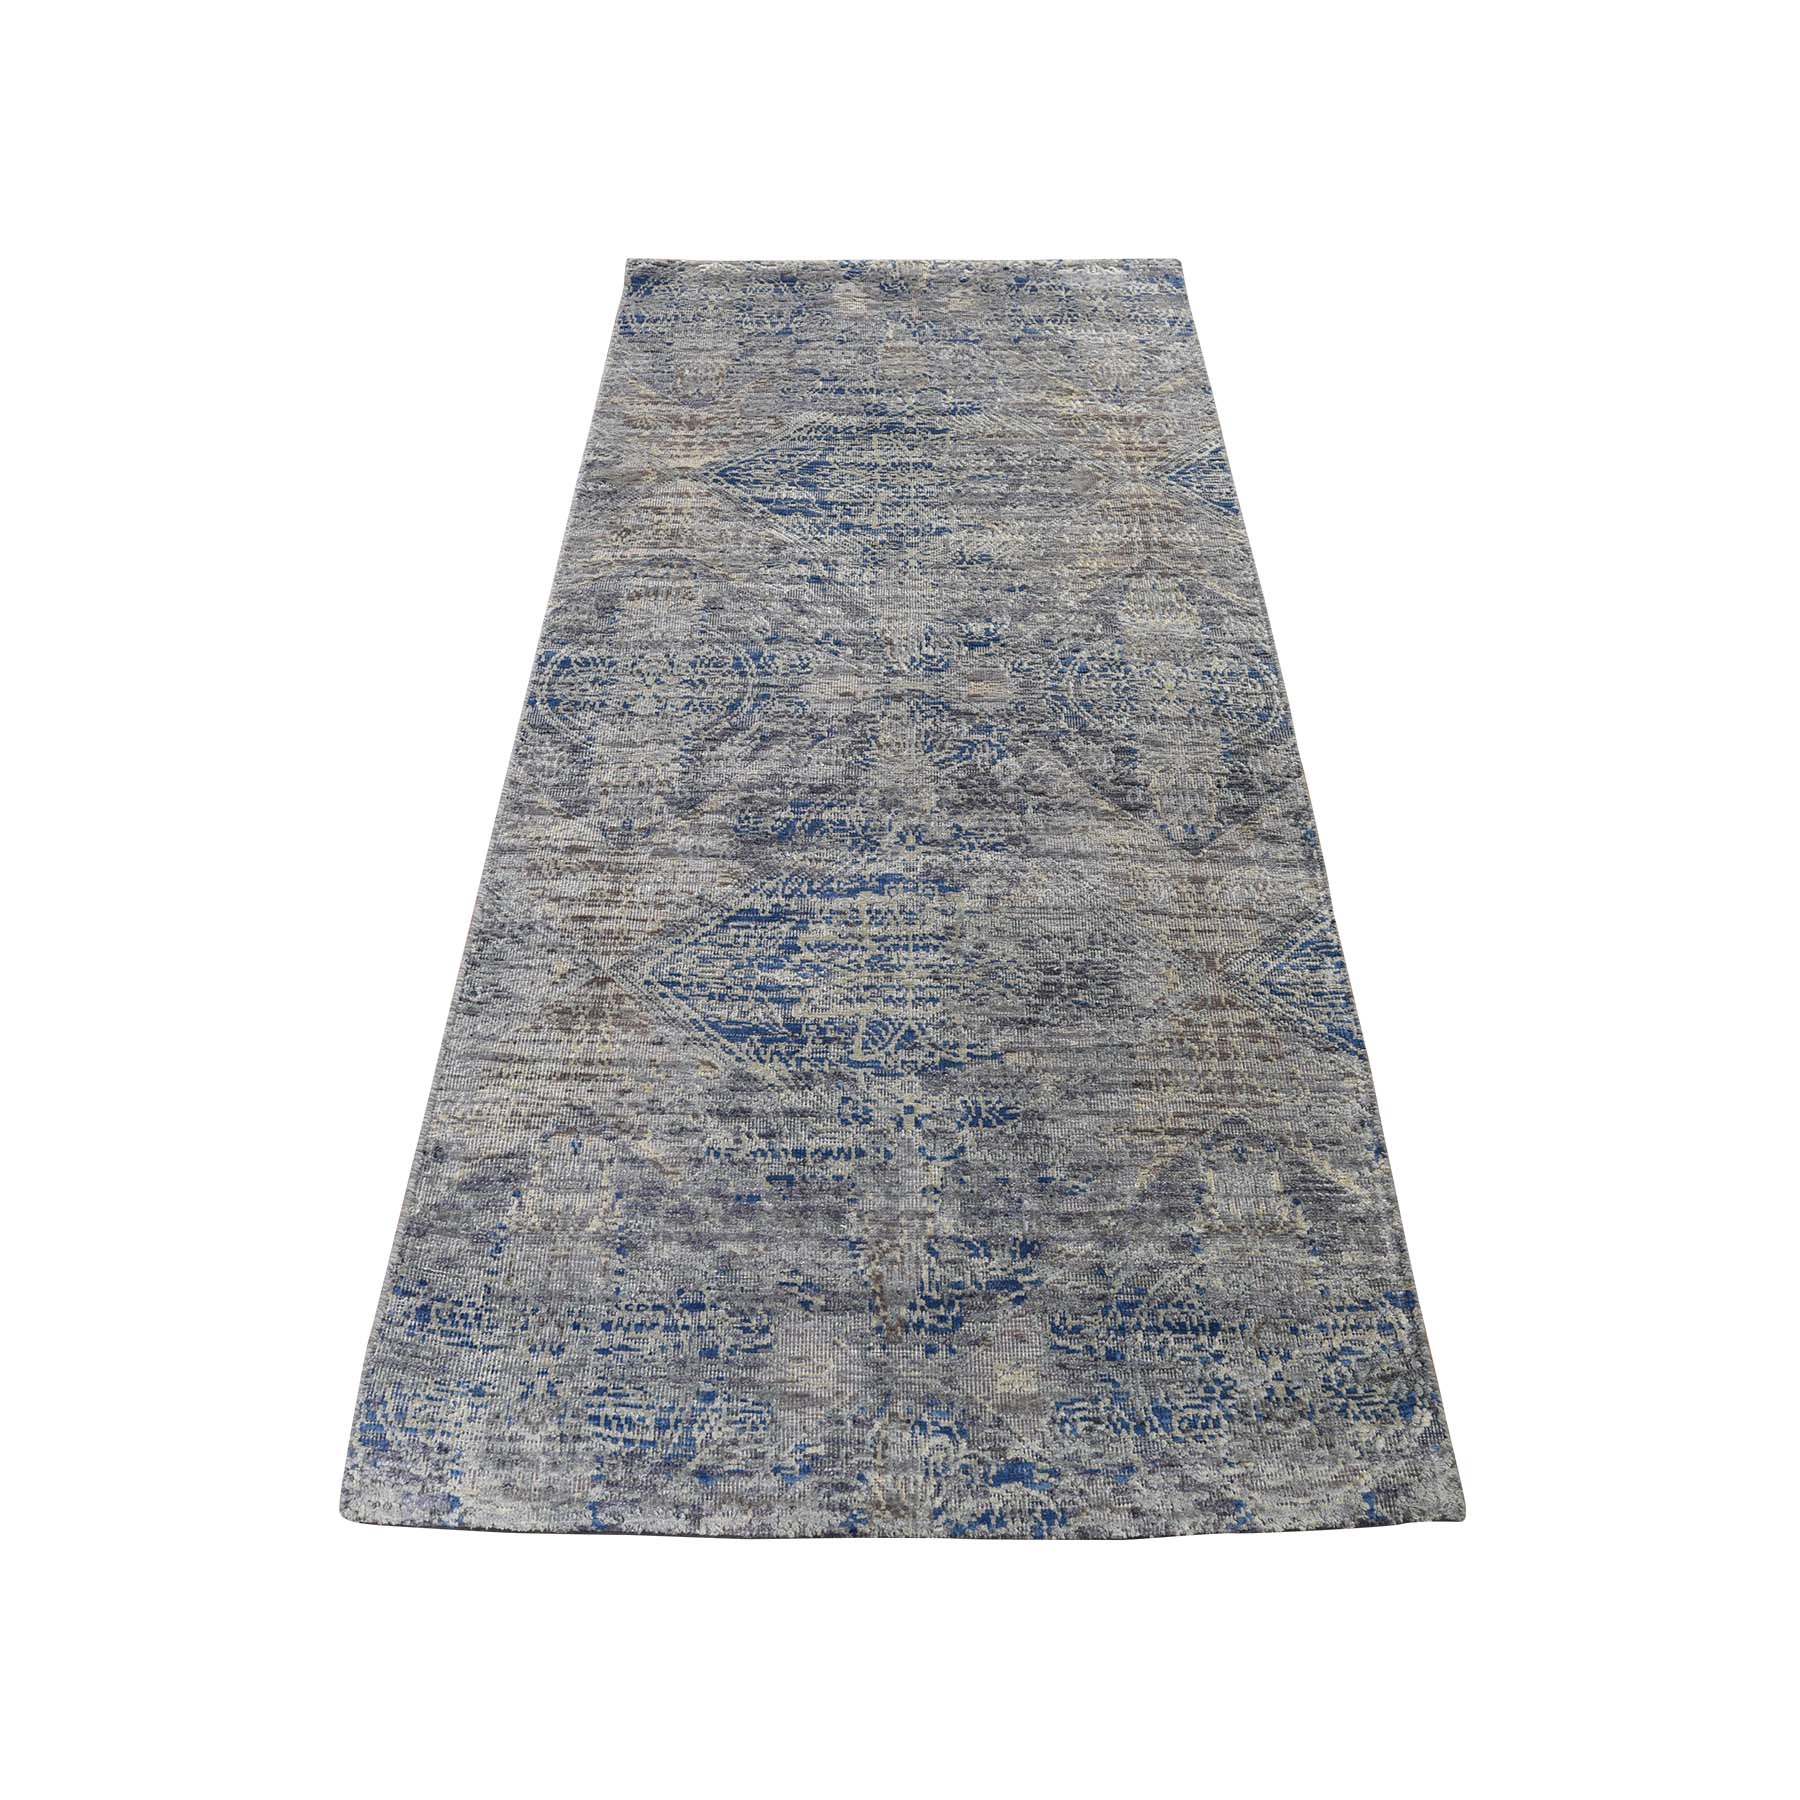 2'6"x6' Silk With Textured Wool Denim Blue Erased Rosette Design Hand Woven Oriental Rug 